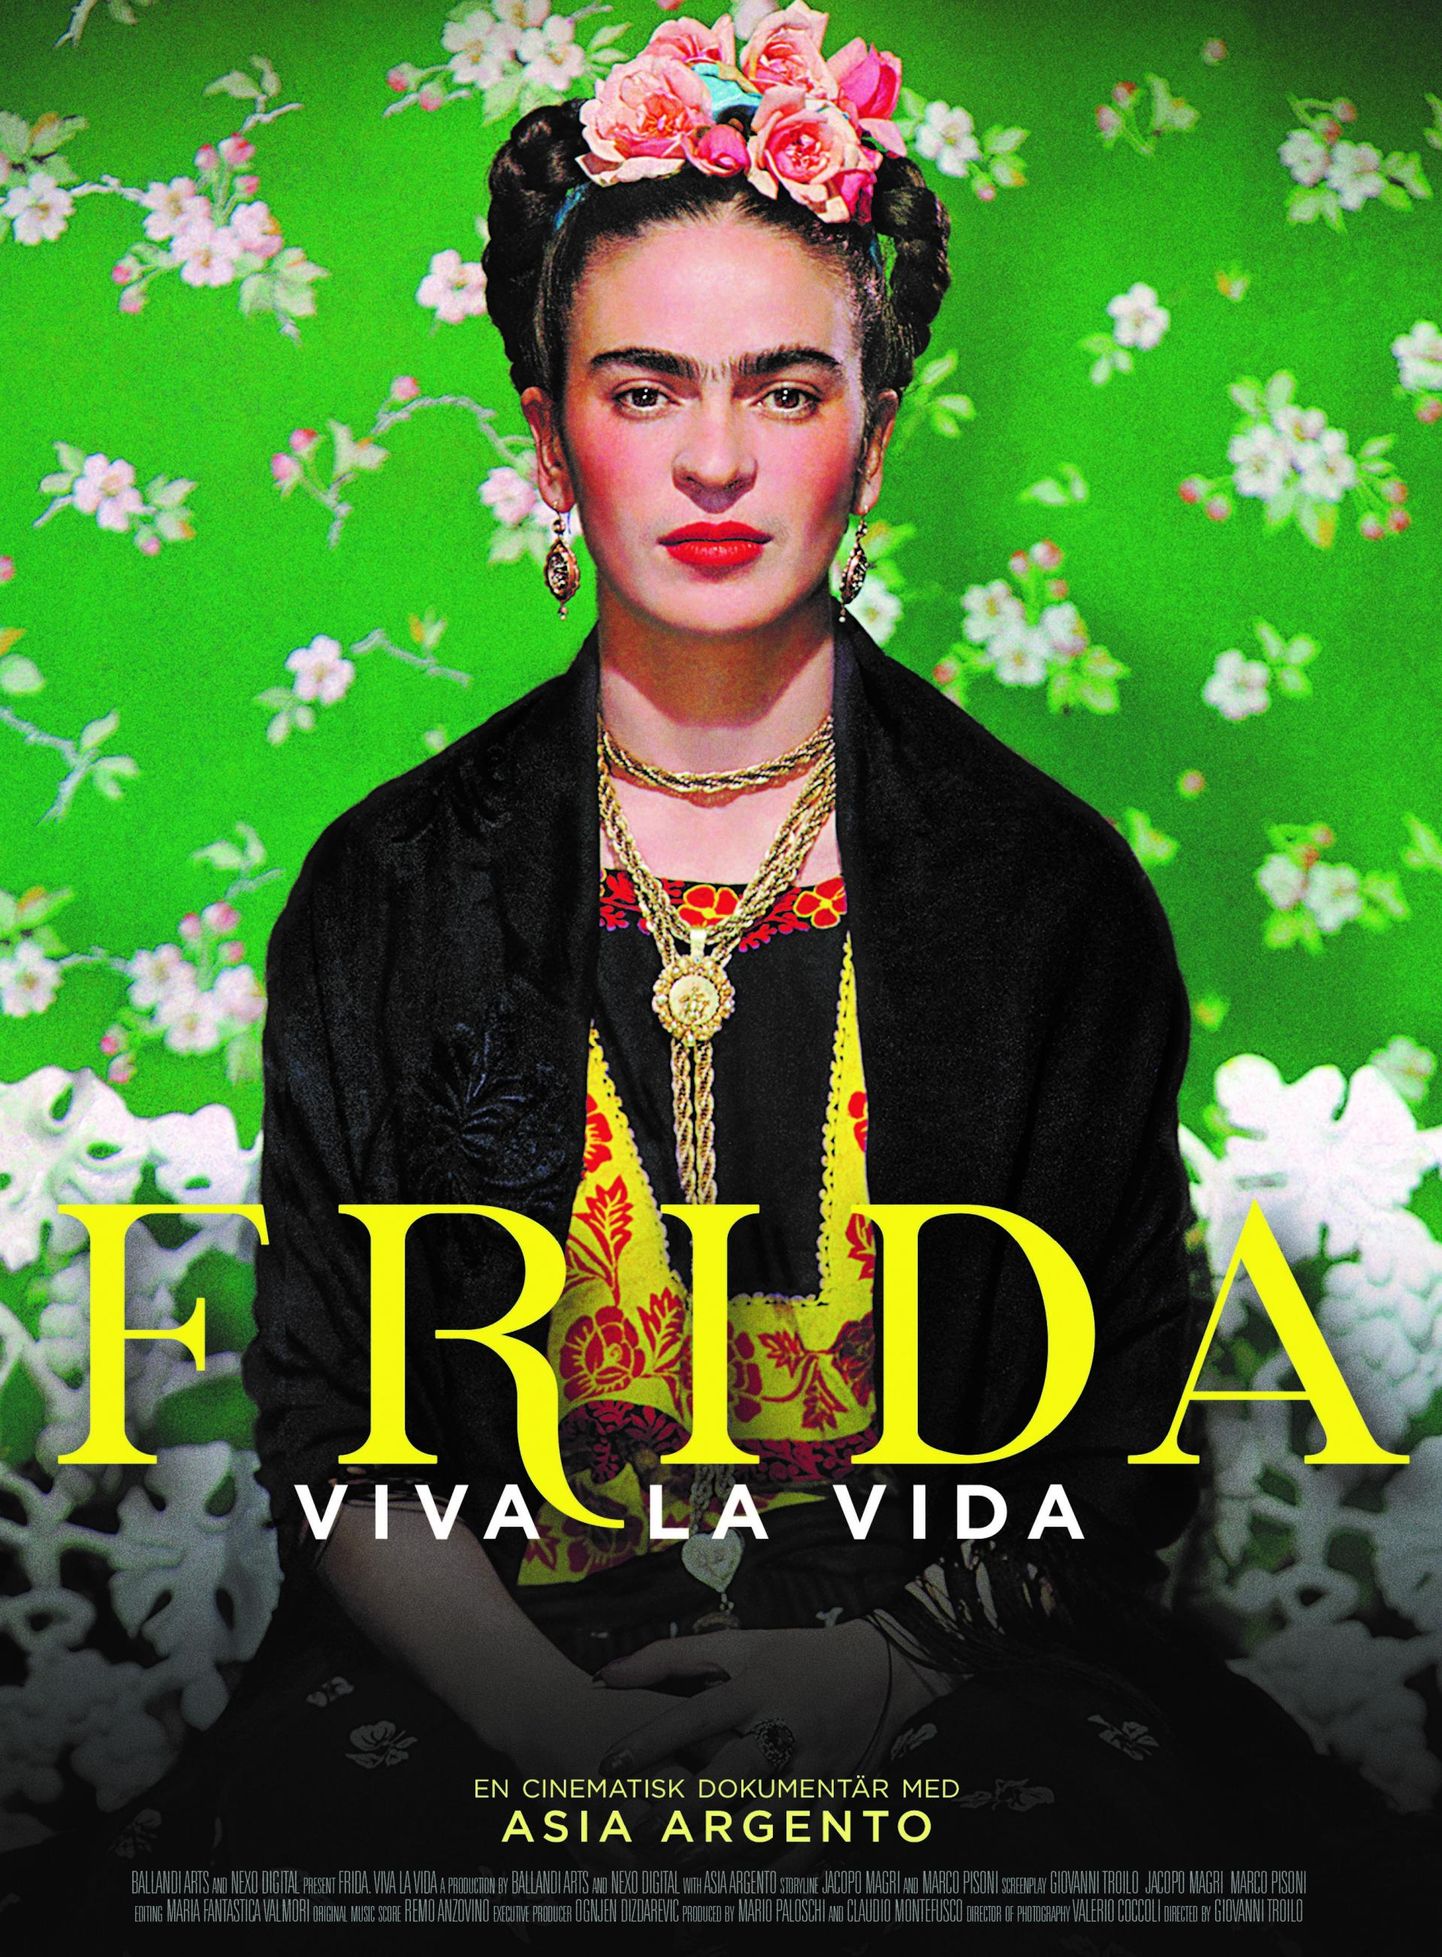 Плакат биографического фильма «Frida. Viva la Vida» о художнице Фриде Кало.